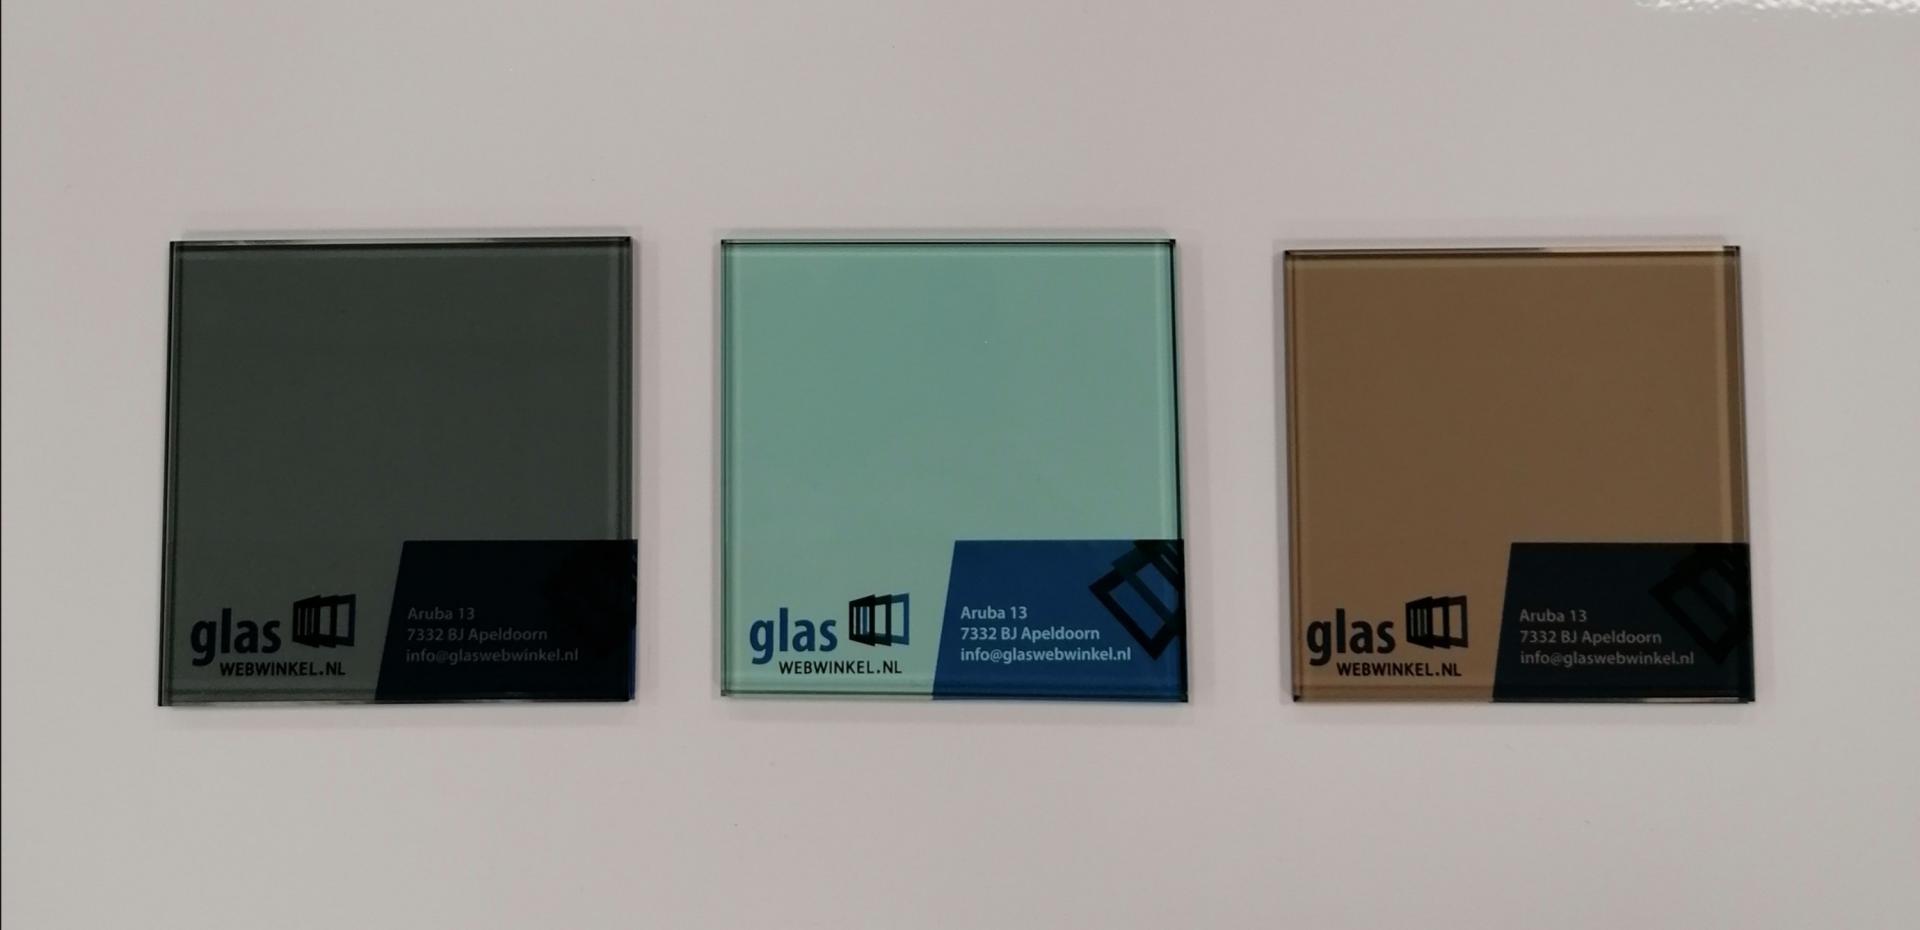 Gekleurd in brons, grijs of groen? | Glaswebwinkel.nl